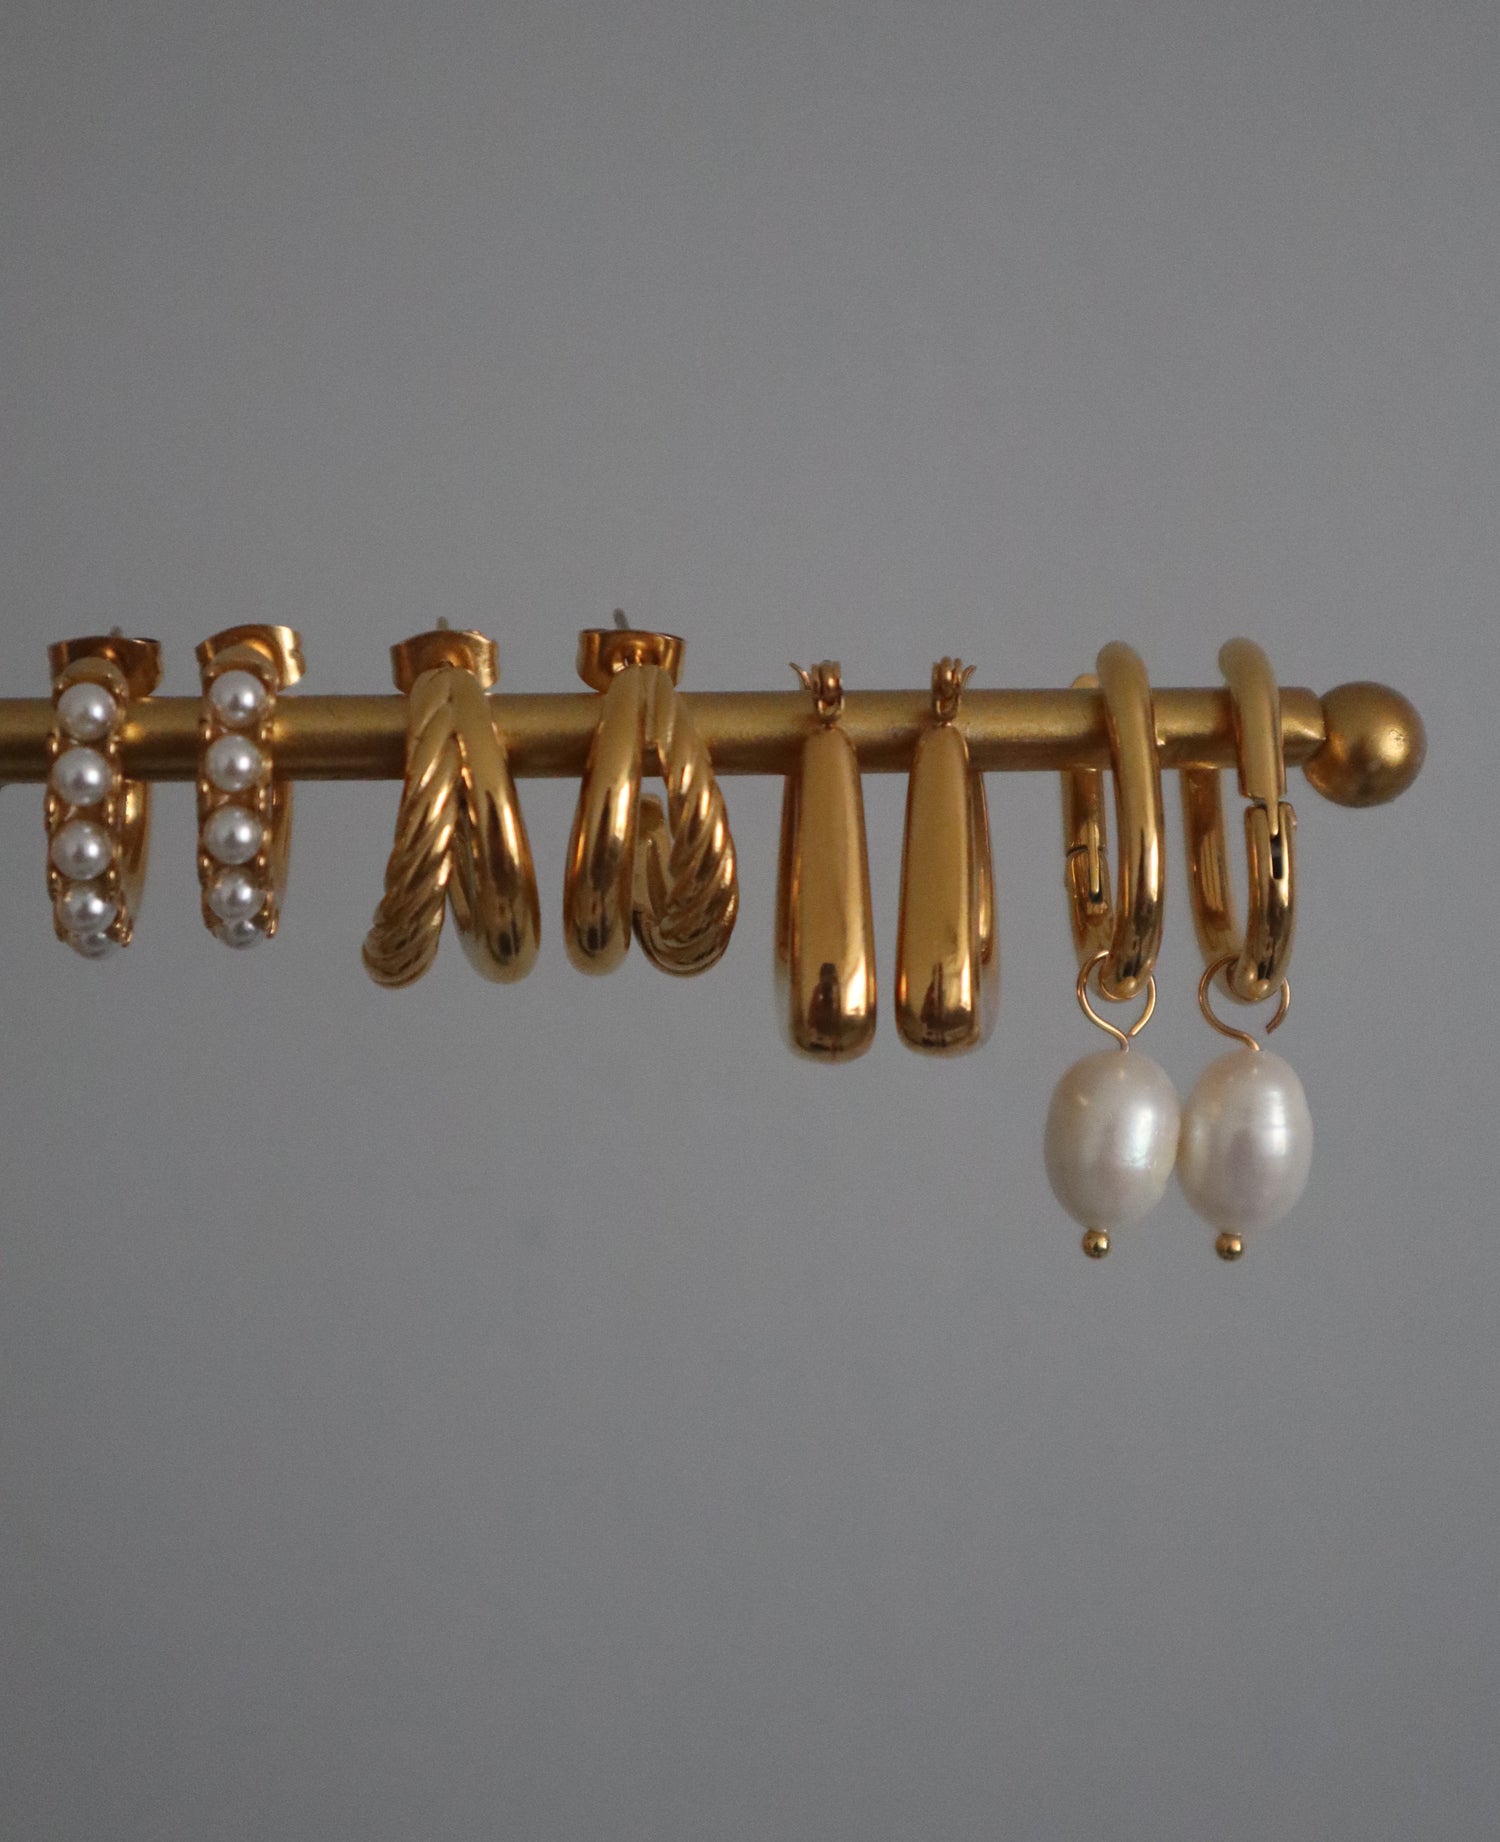 EARRINGS - JESSA JEWELRY | GOLD JEWELRY; earrings, rings, necklaces, jewelry storage; gold jewelry for everyday wear, minimalistic jewelry